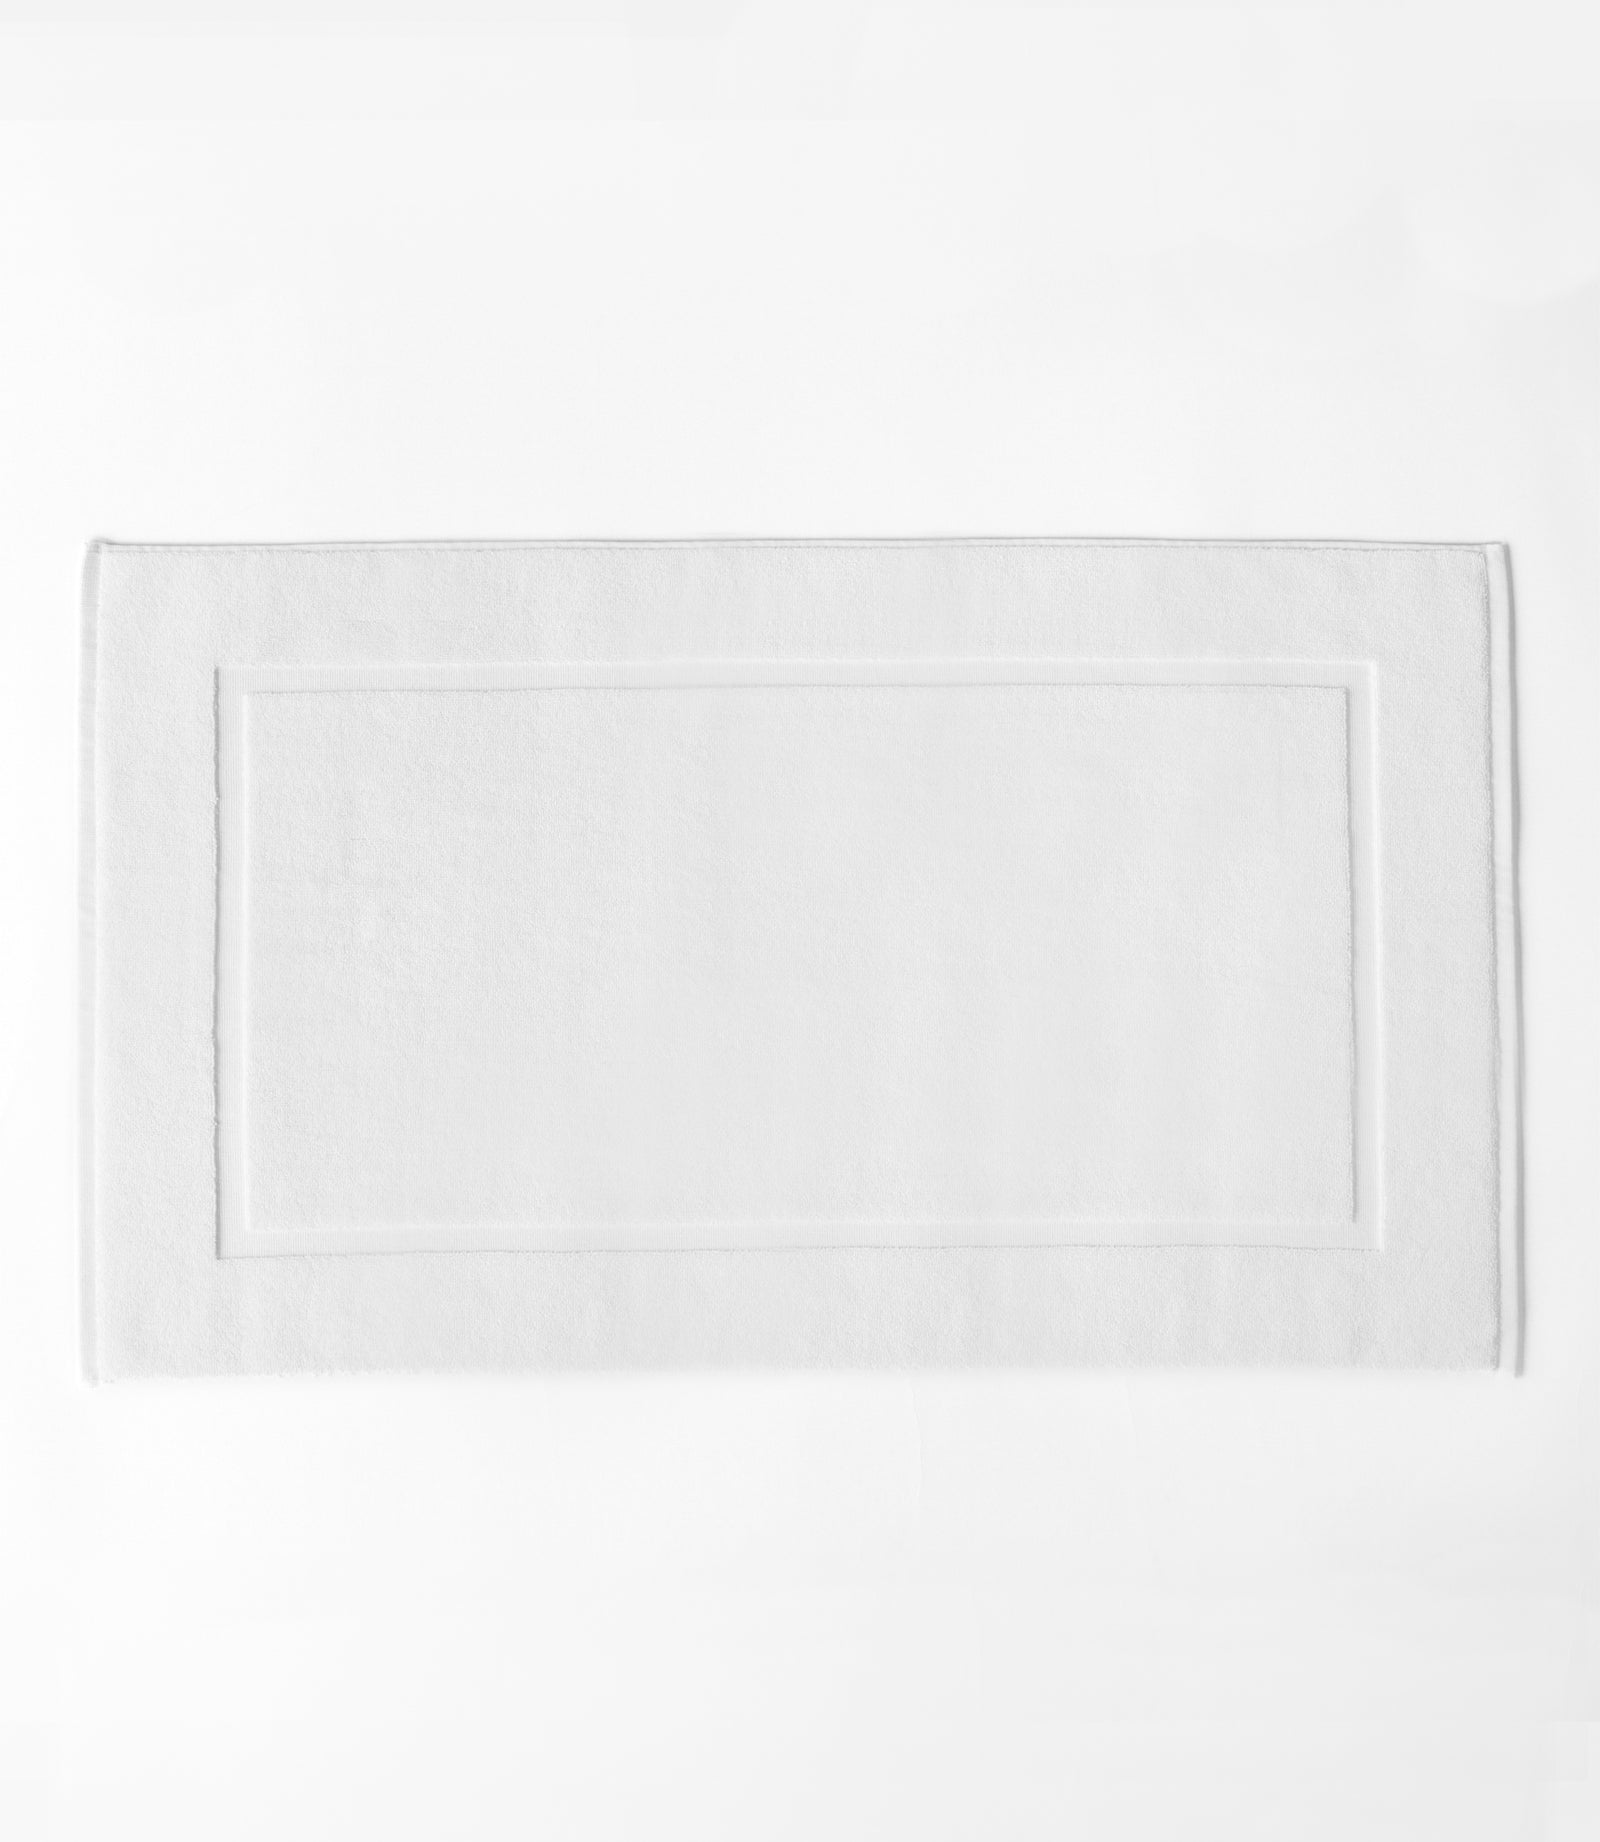 White Premium Plush Bath Mat resting on white background.